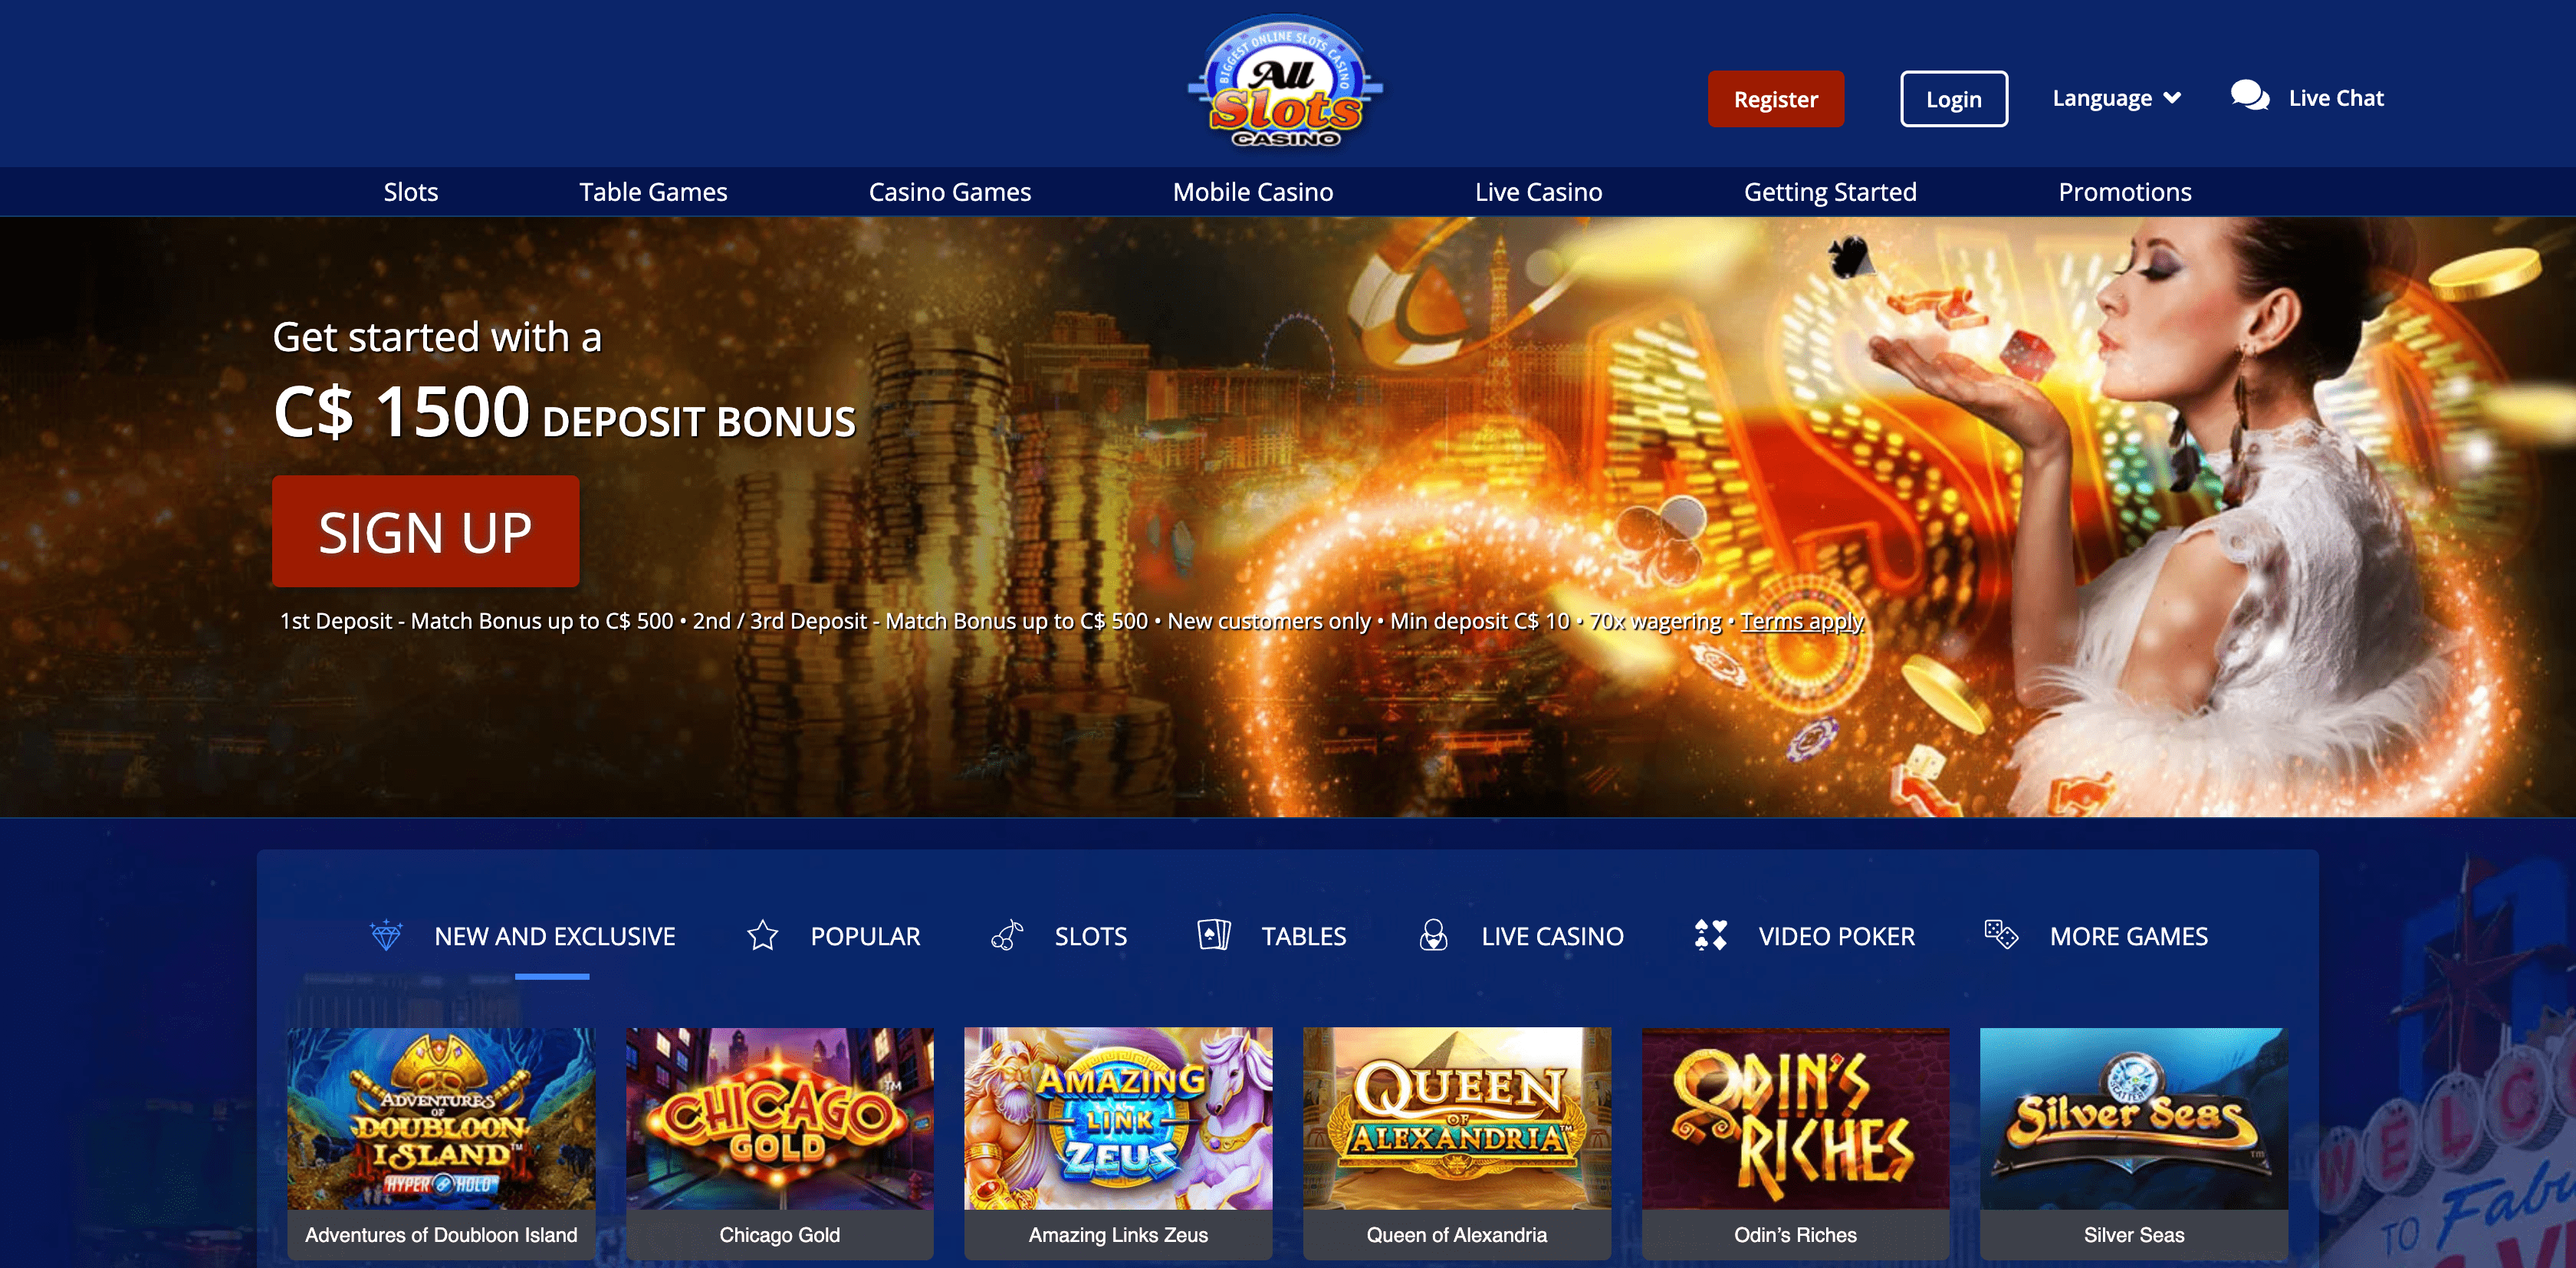 All Slots Main Page